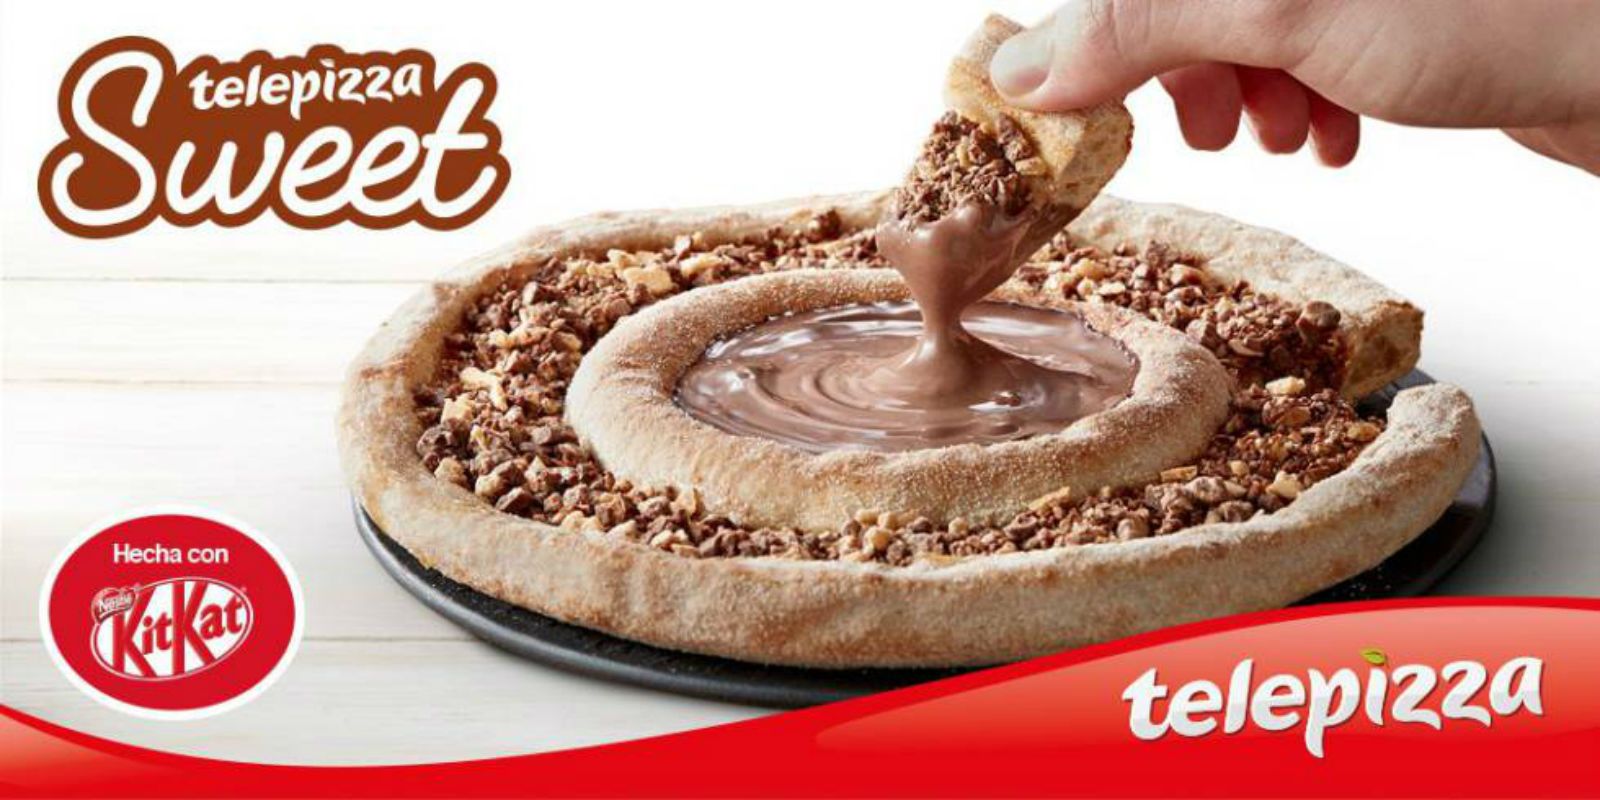 TelePizza y KitKat se unen para hacer una nueva pizza